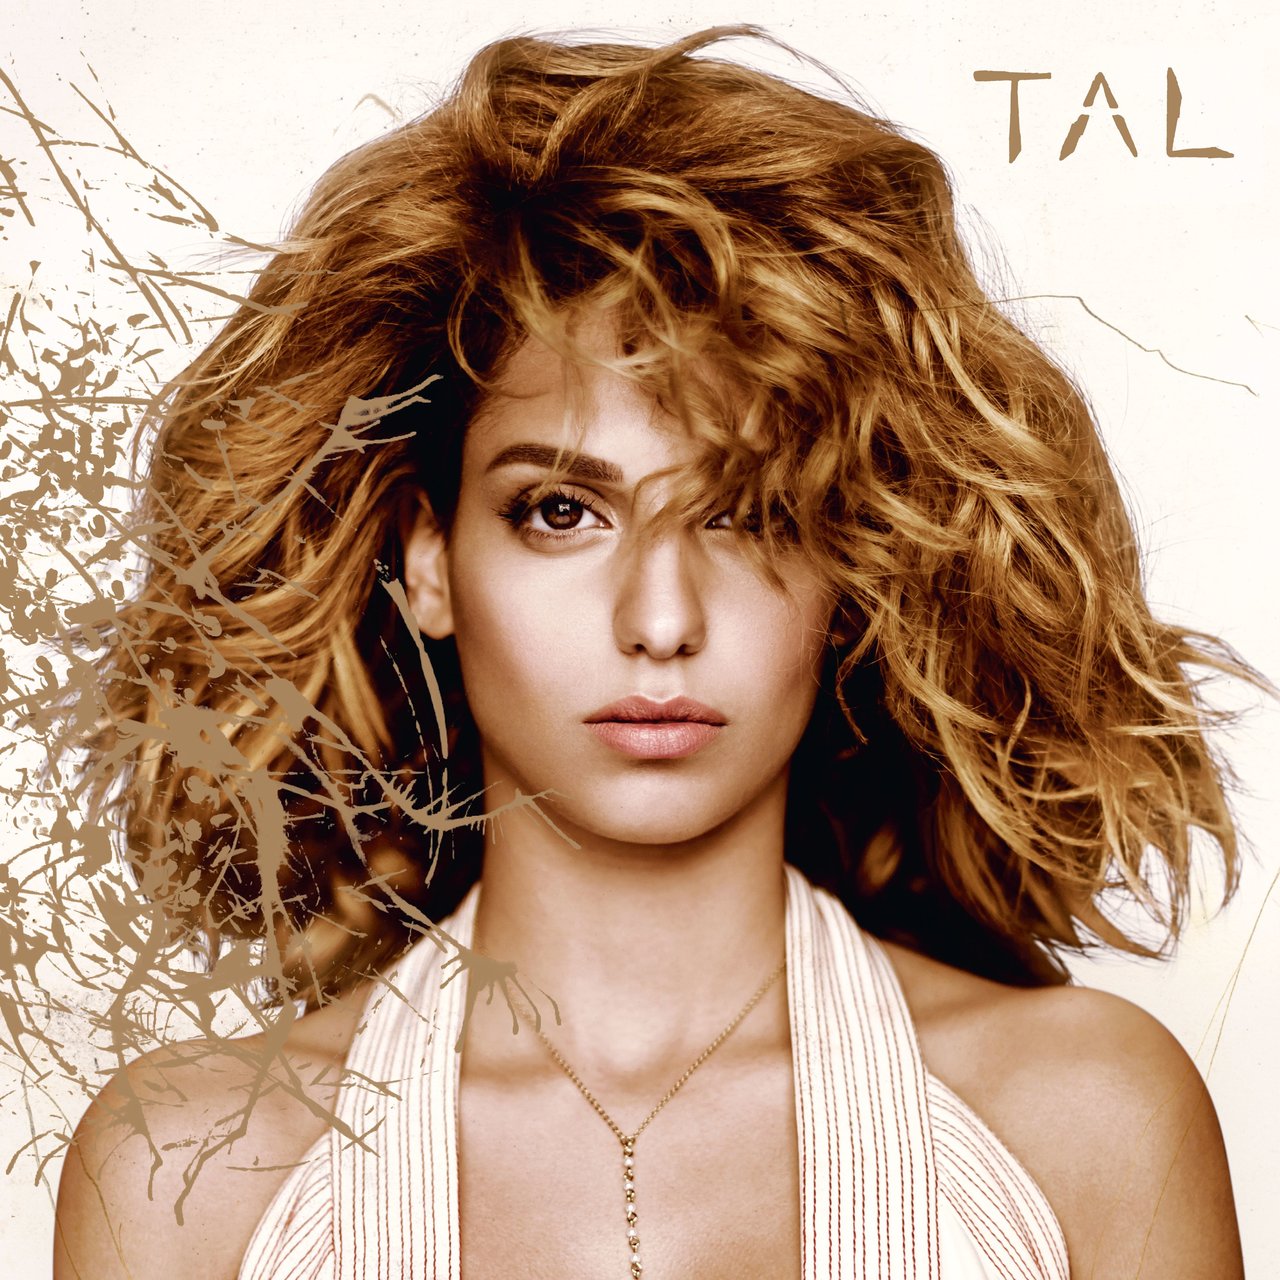 TAL TAL cover artwork